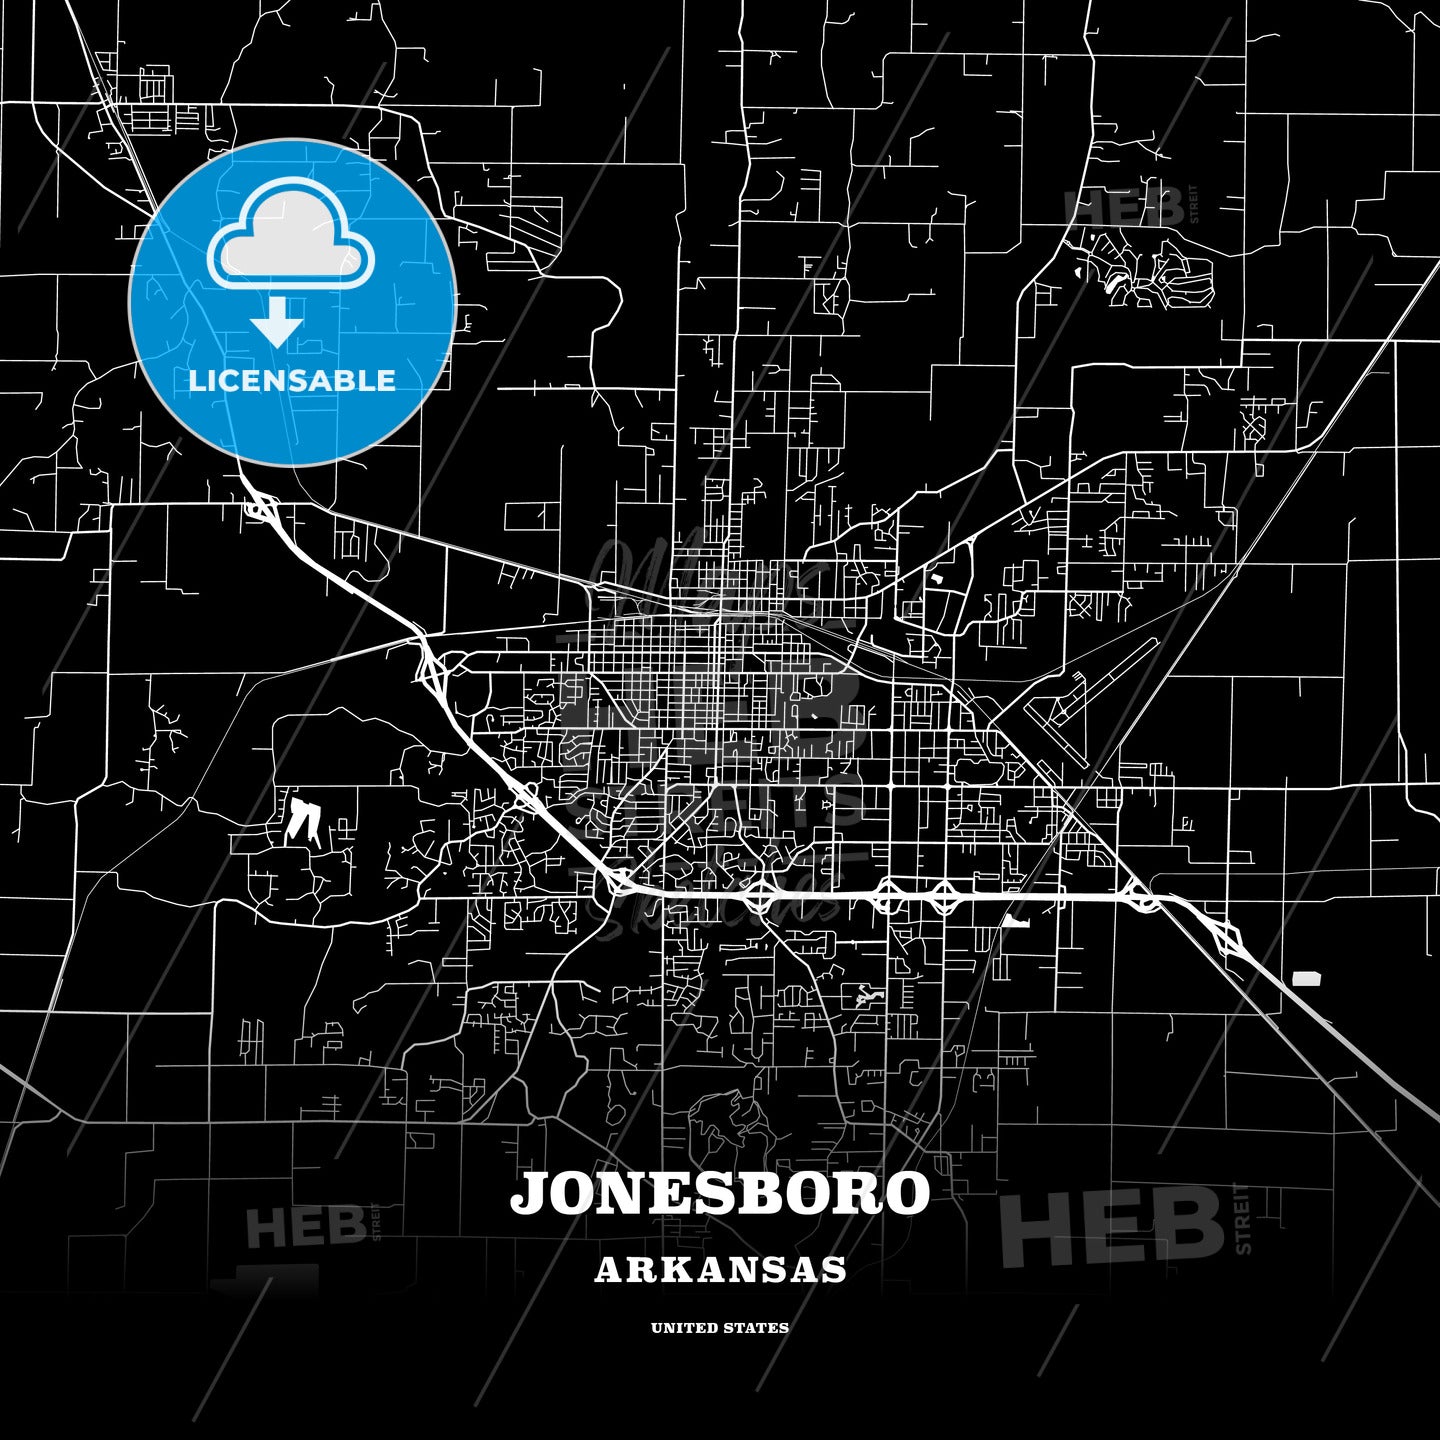 Jonesboro, Arkansas, USA map